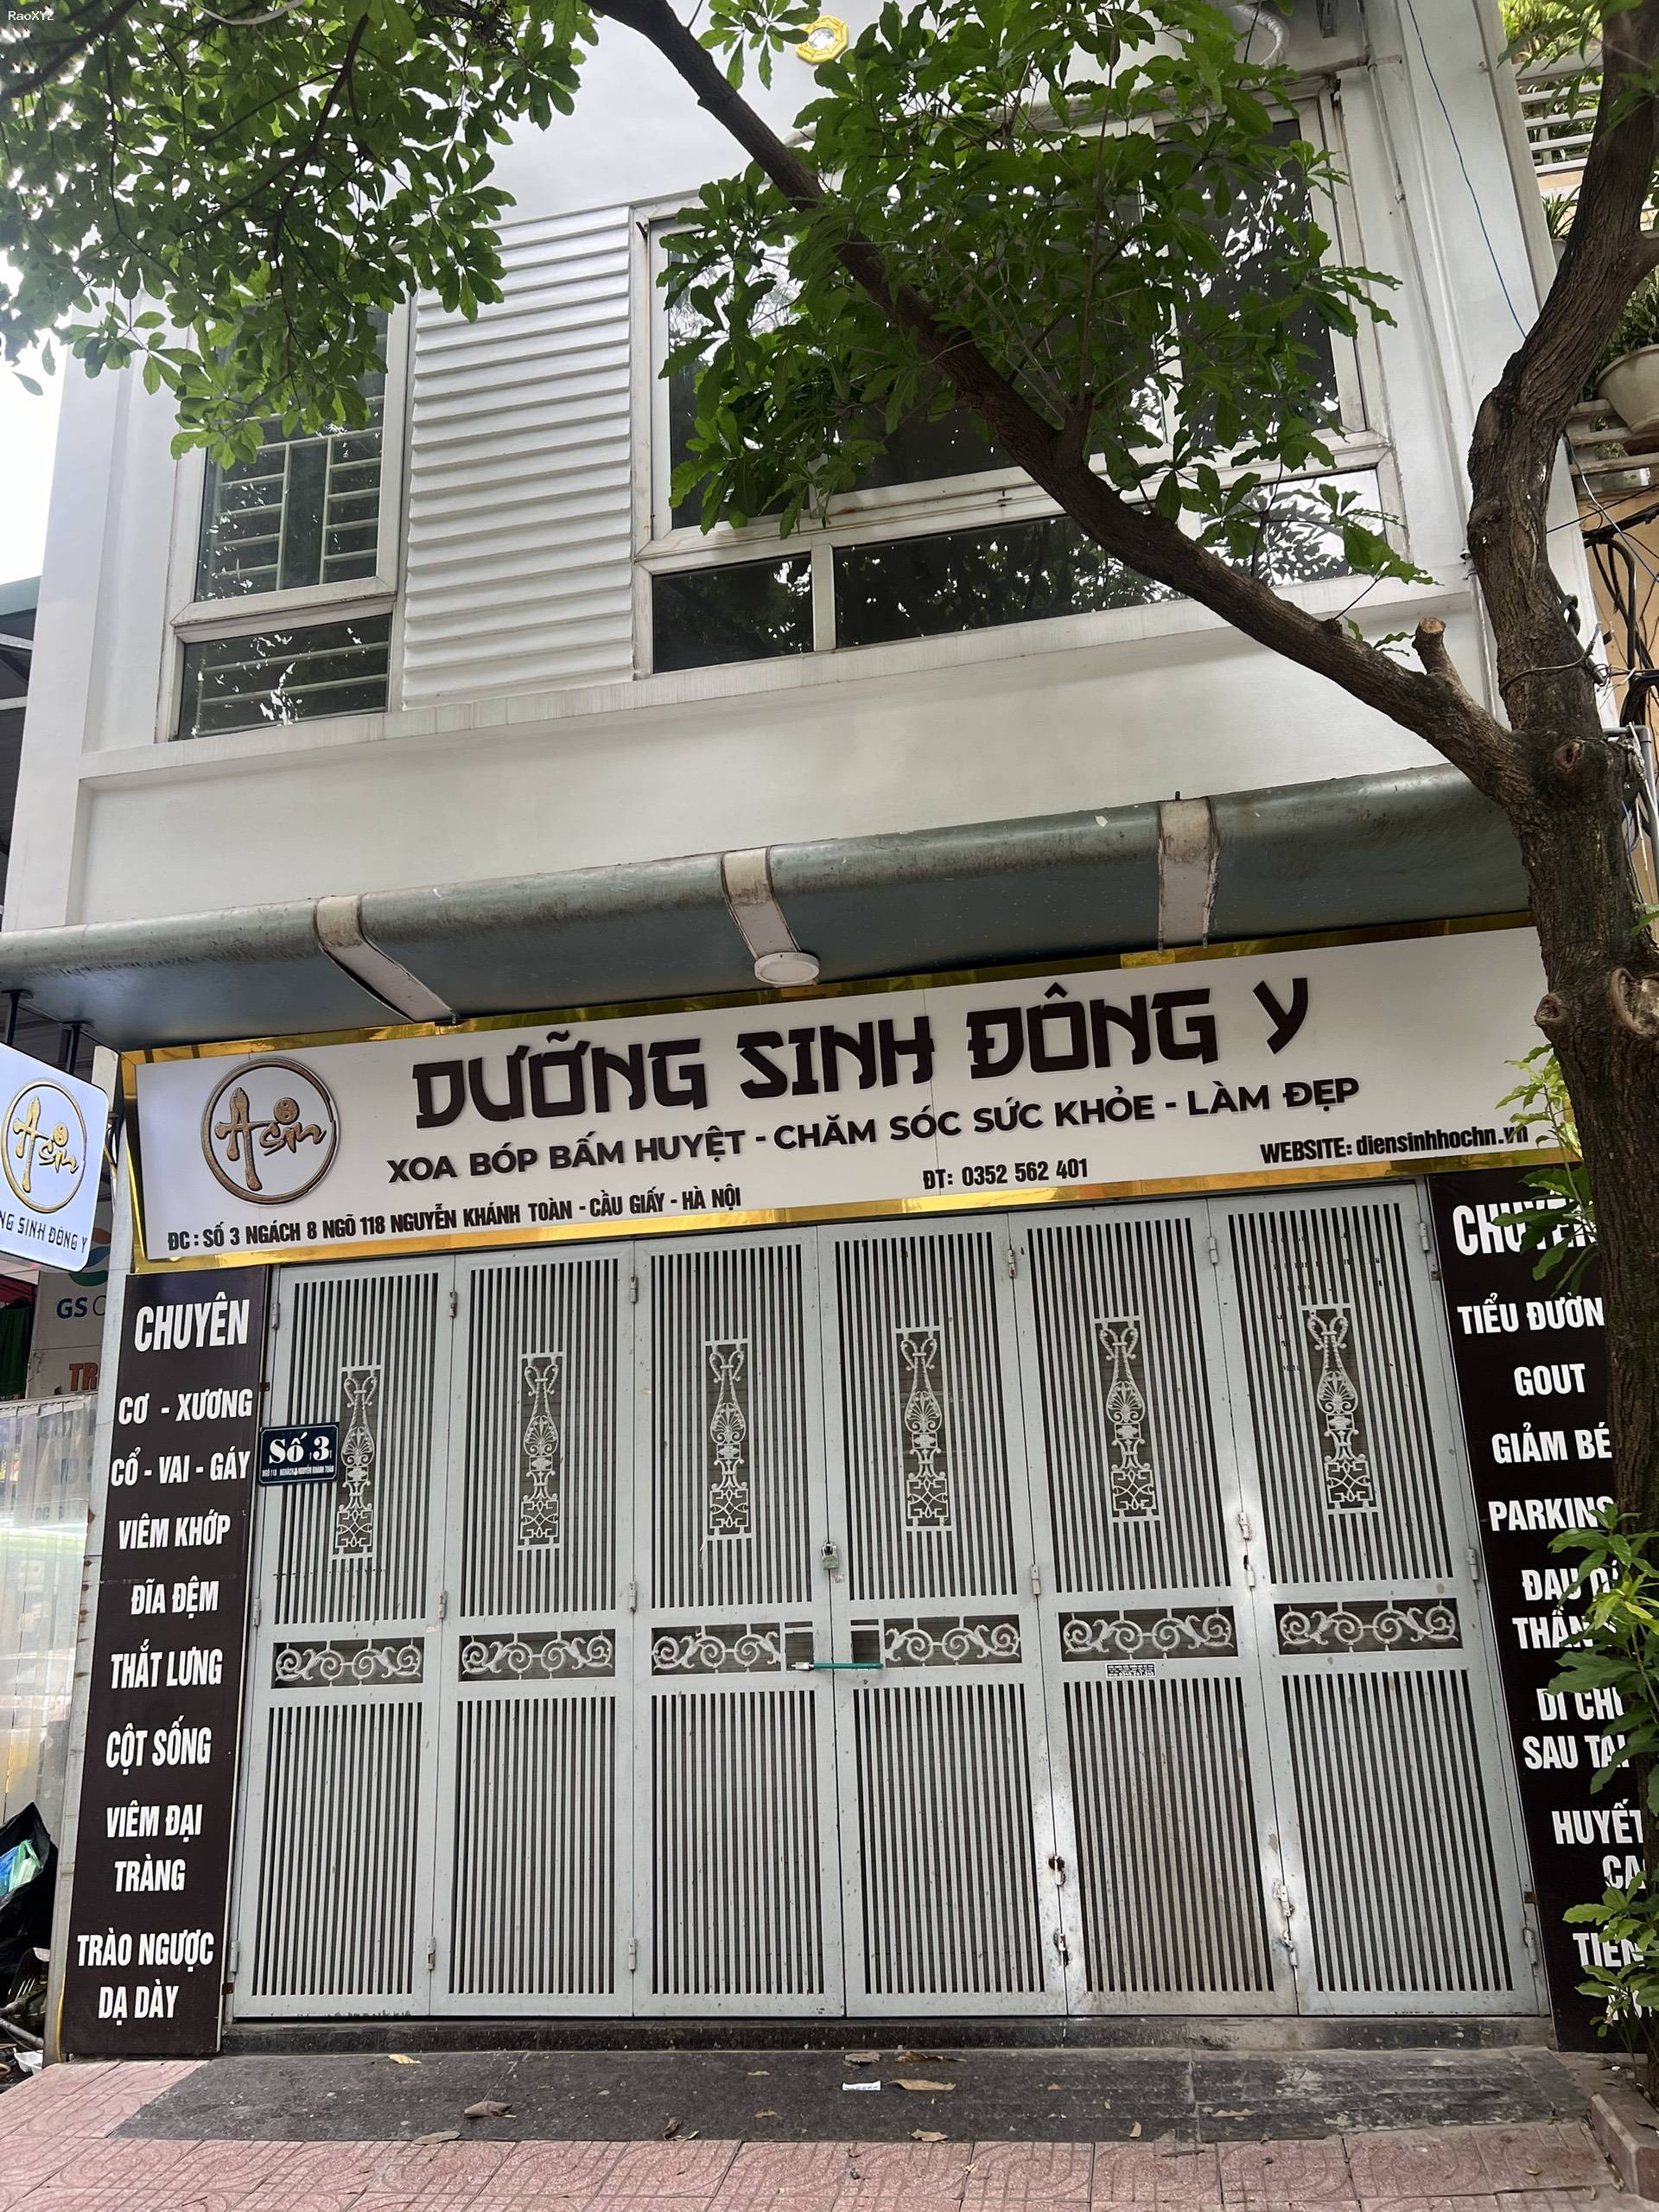 Tôi chính chủ cho thuê nhà mặt tiền 6 tầng tại địa chỉ Nhà số 3 ngõ 118 ngách 8 Nguyễn Khánh Toàn